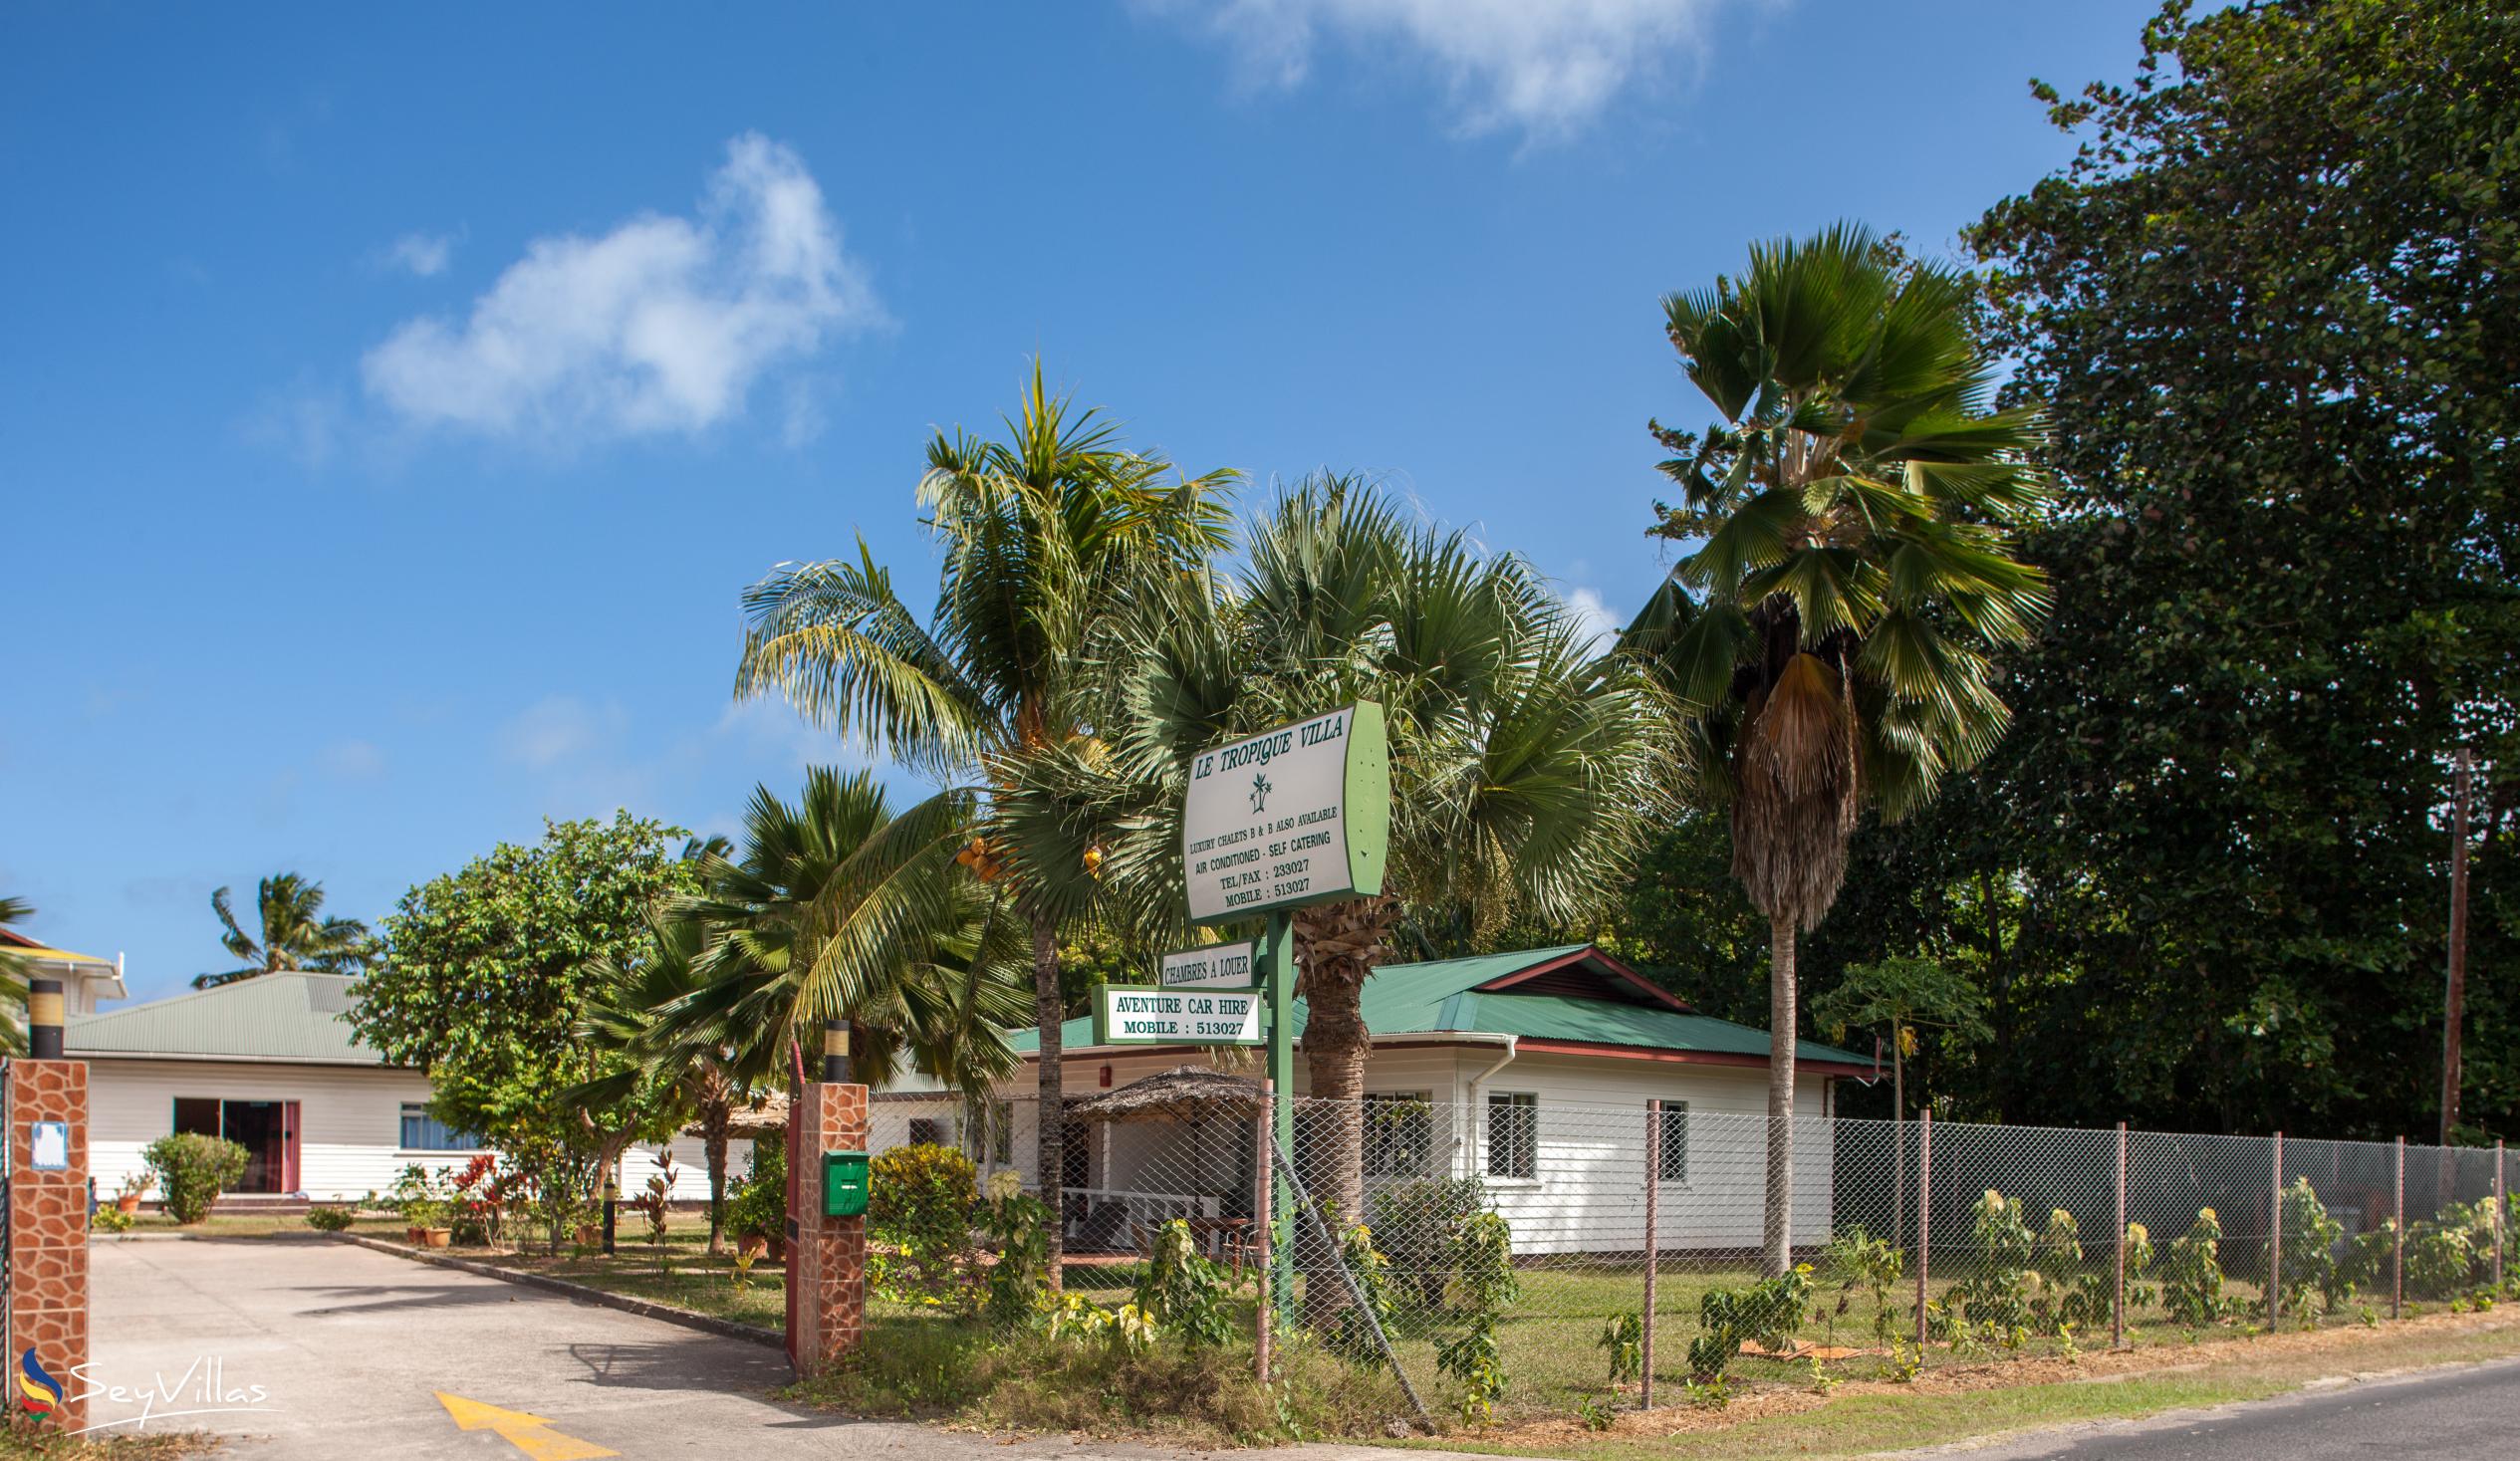 Foto 3: Le Tropique - Aussenbereich - Praslin (Seychellen)